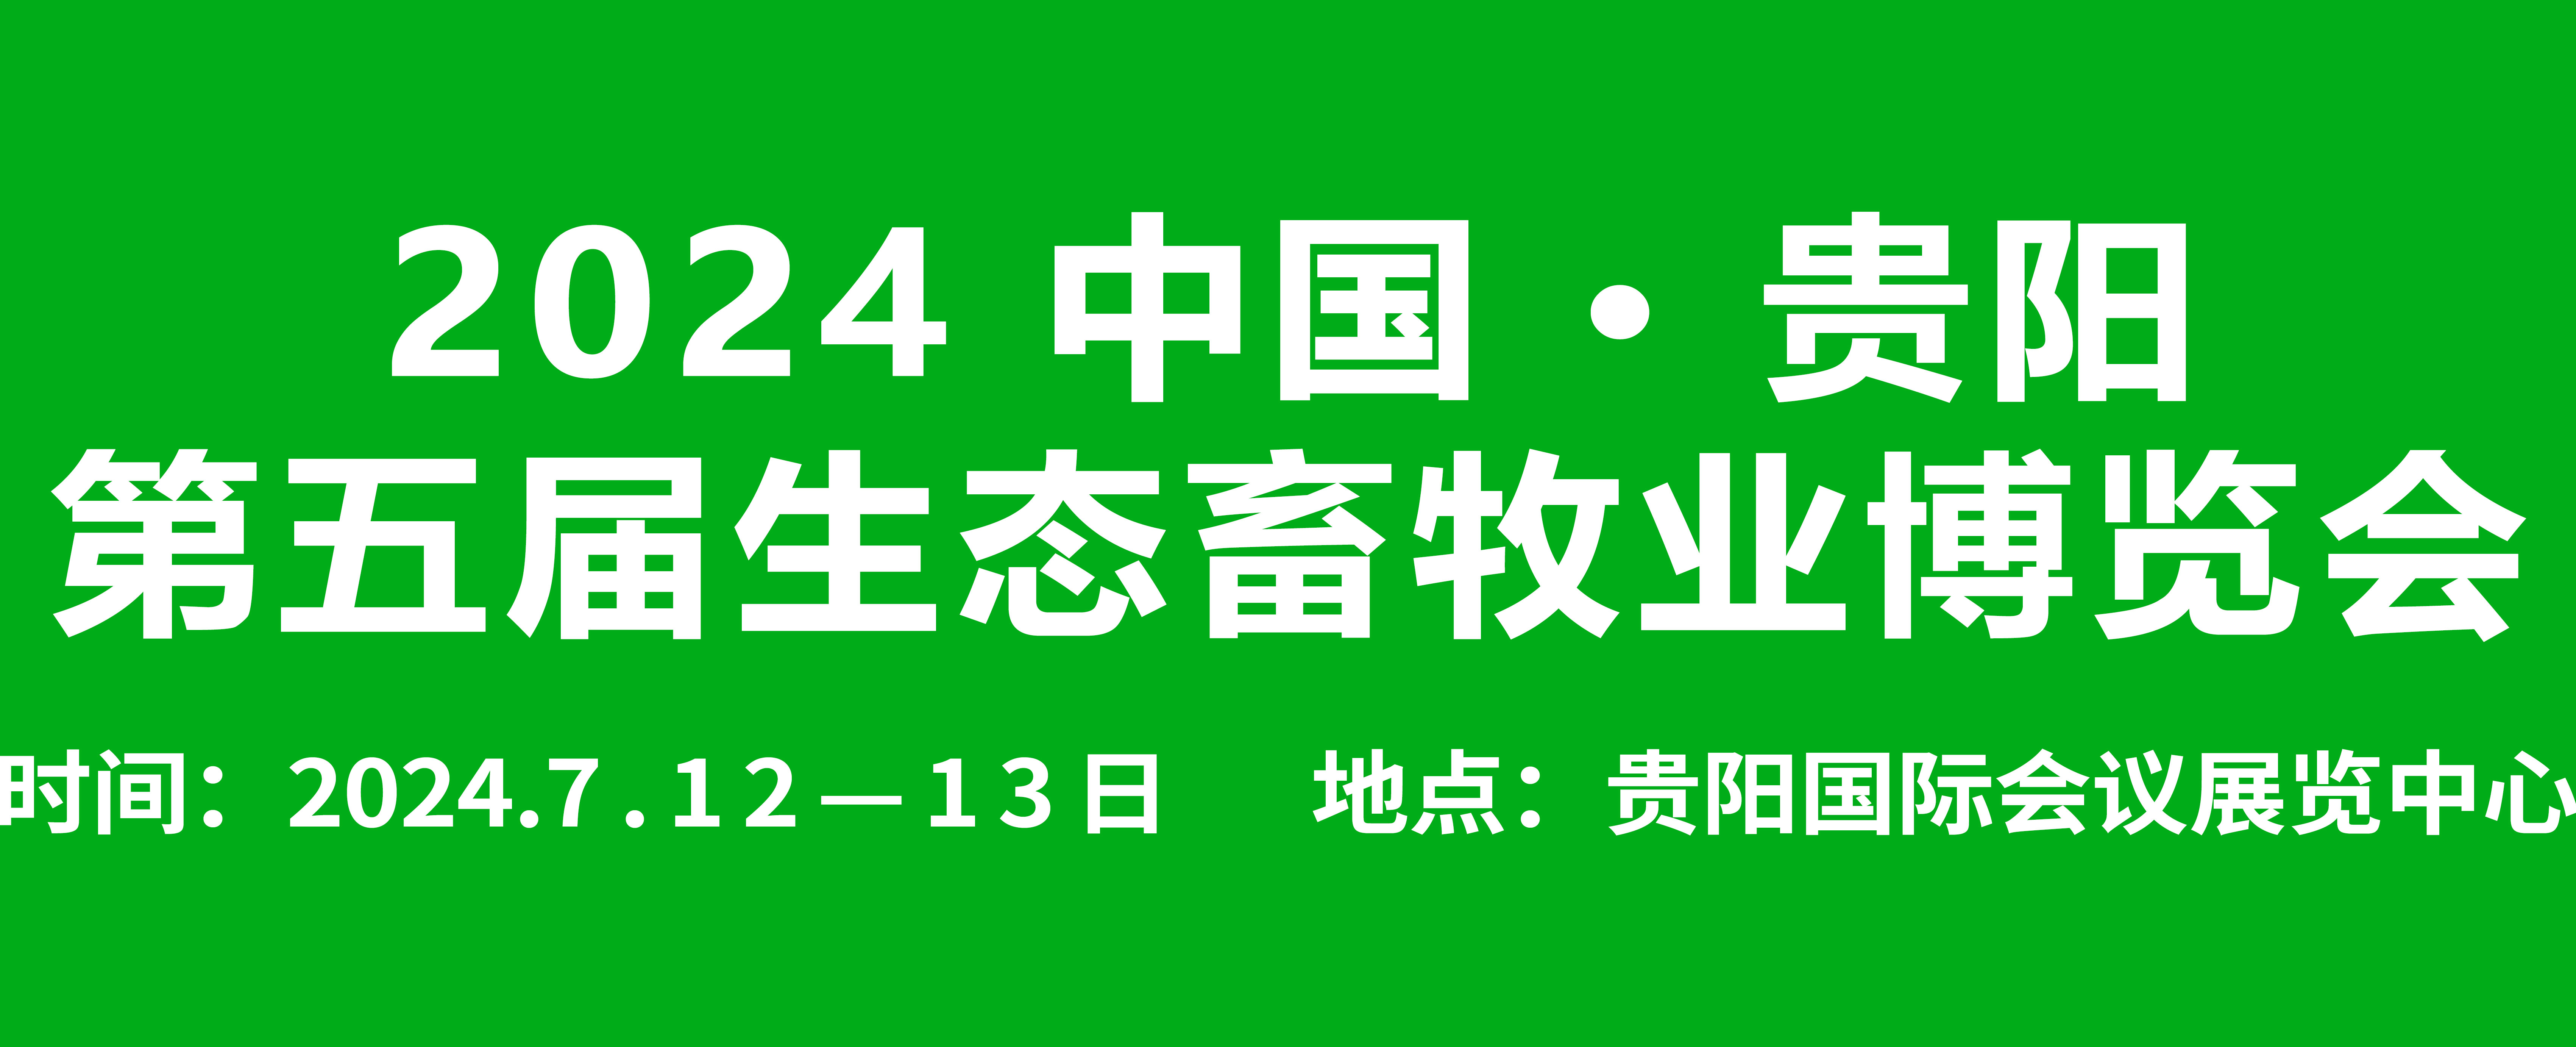 2024年7月12-13日中国贵阳第五届生态畜牧业博览会